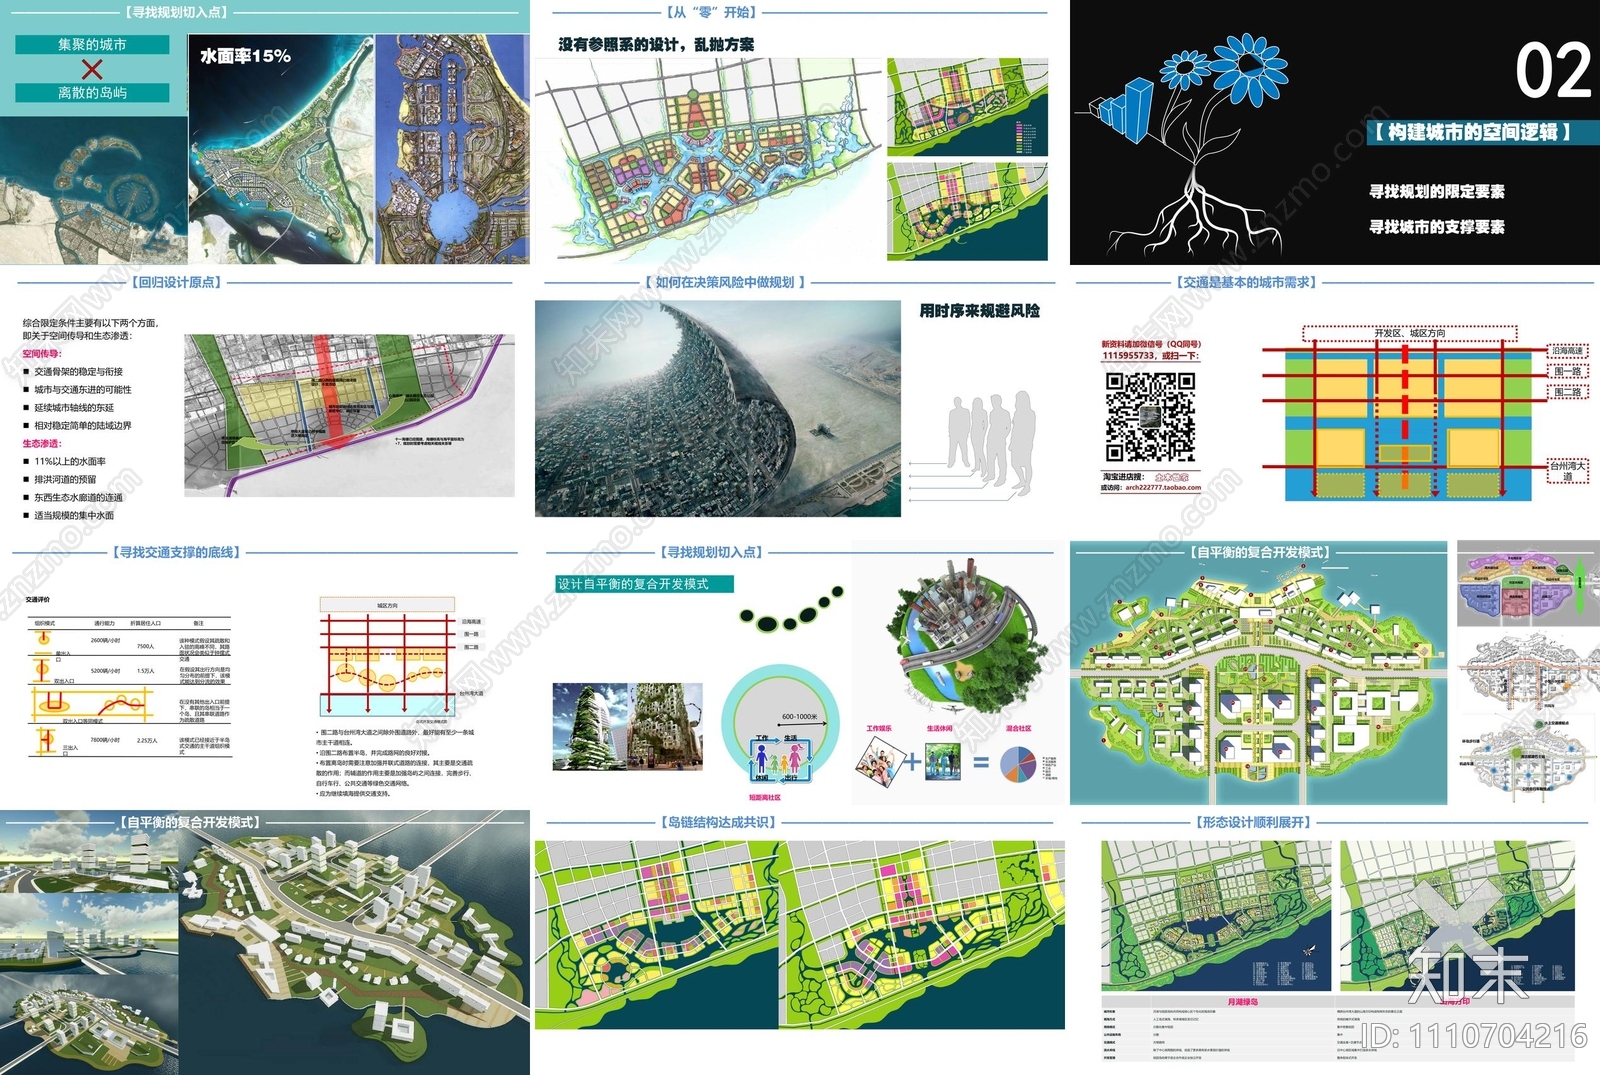 循环经济集聚区核心区城市设计方案文本下载【ID:1110704216】